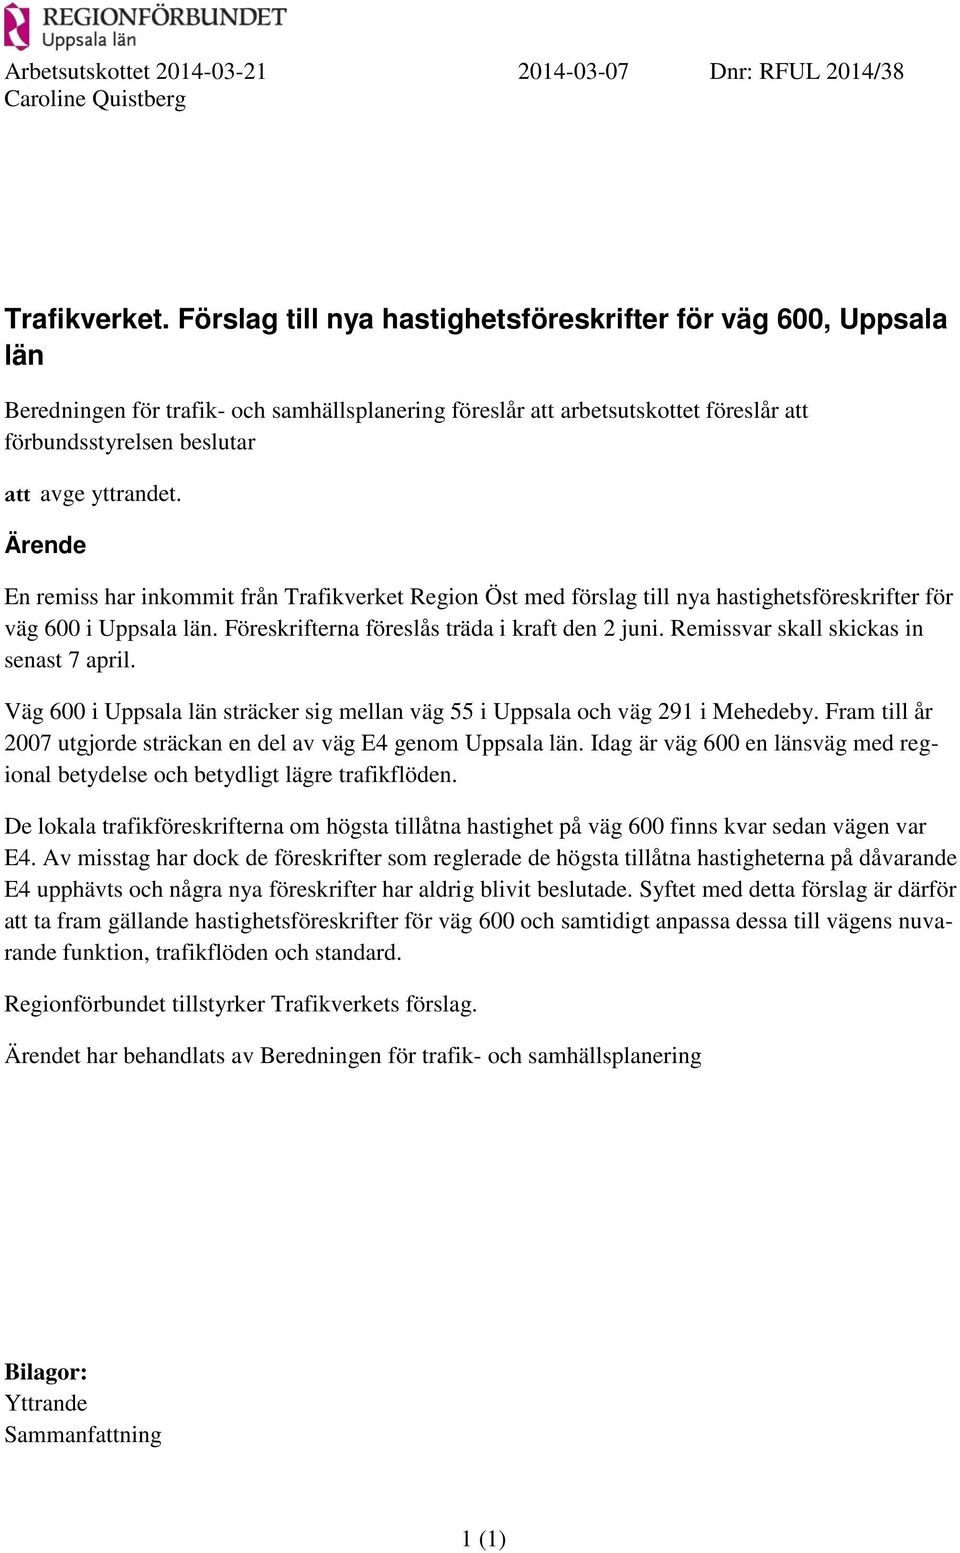 Ärende En remiss har inkommit från Trafikverket Region Öst med förslag till nya hastighetsföreskrifter för väg 600 i Uppsala län. Föreskrifterna föreslås träda i kraft den 2 juni.